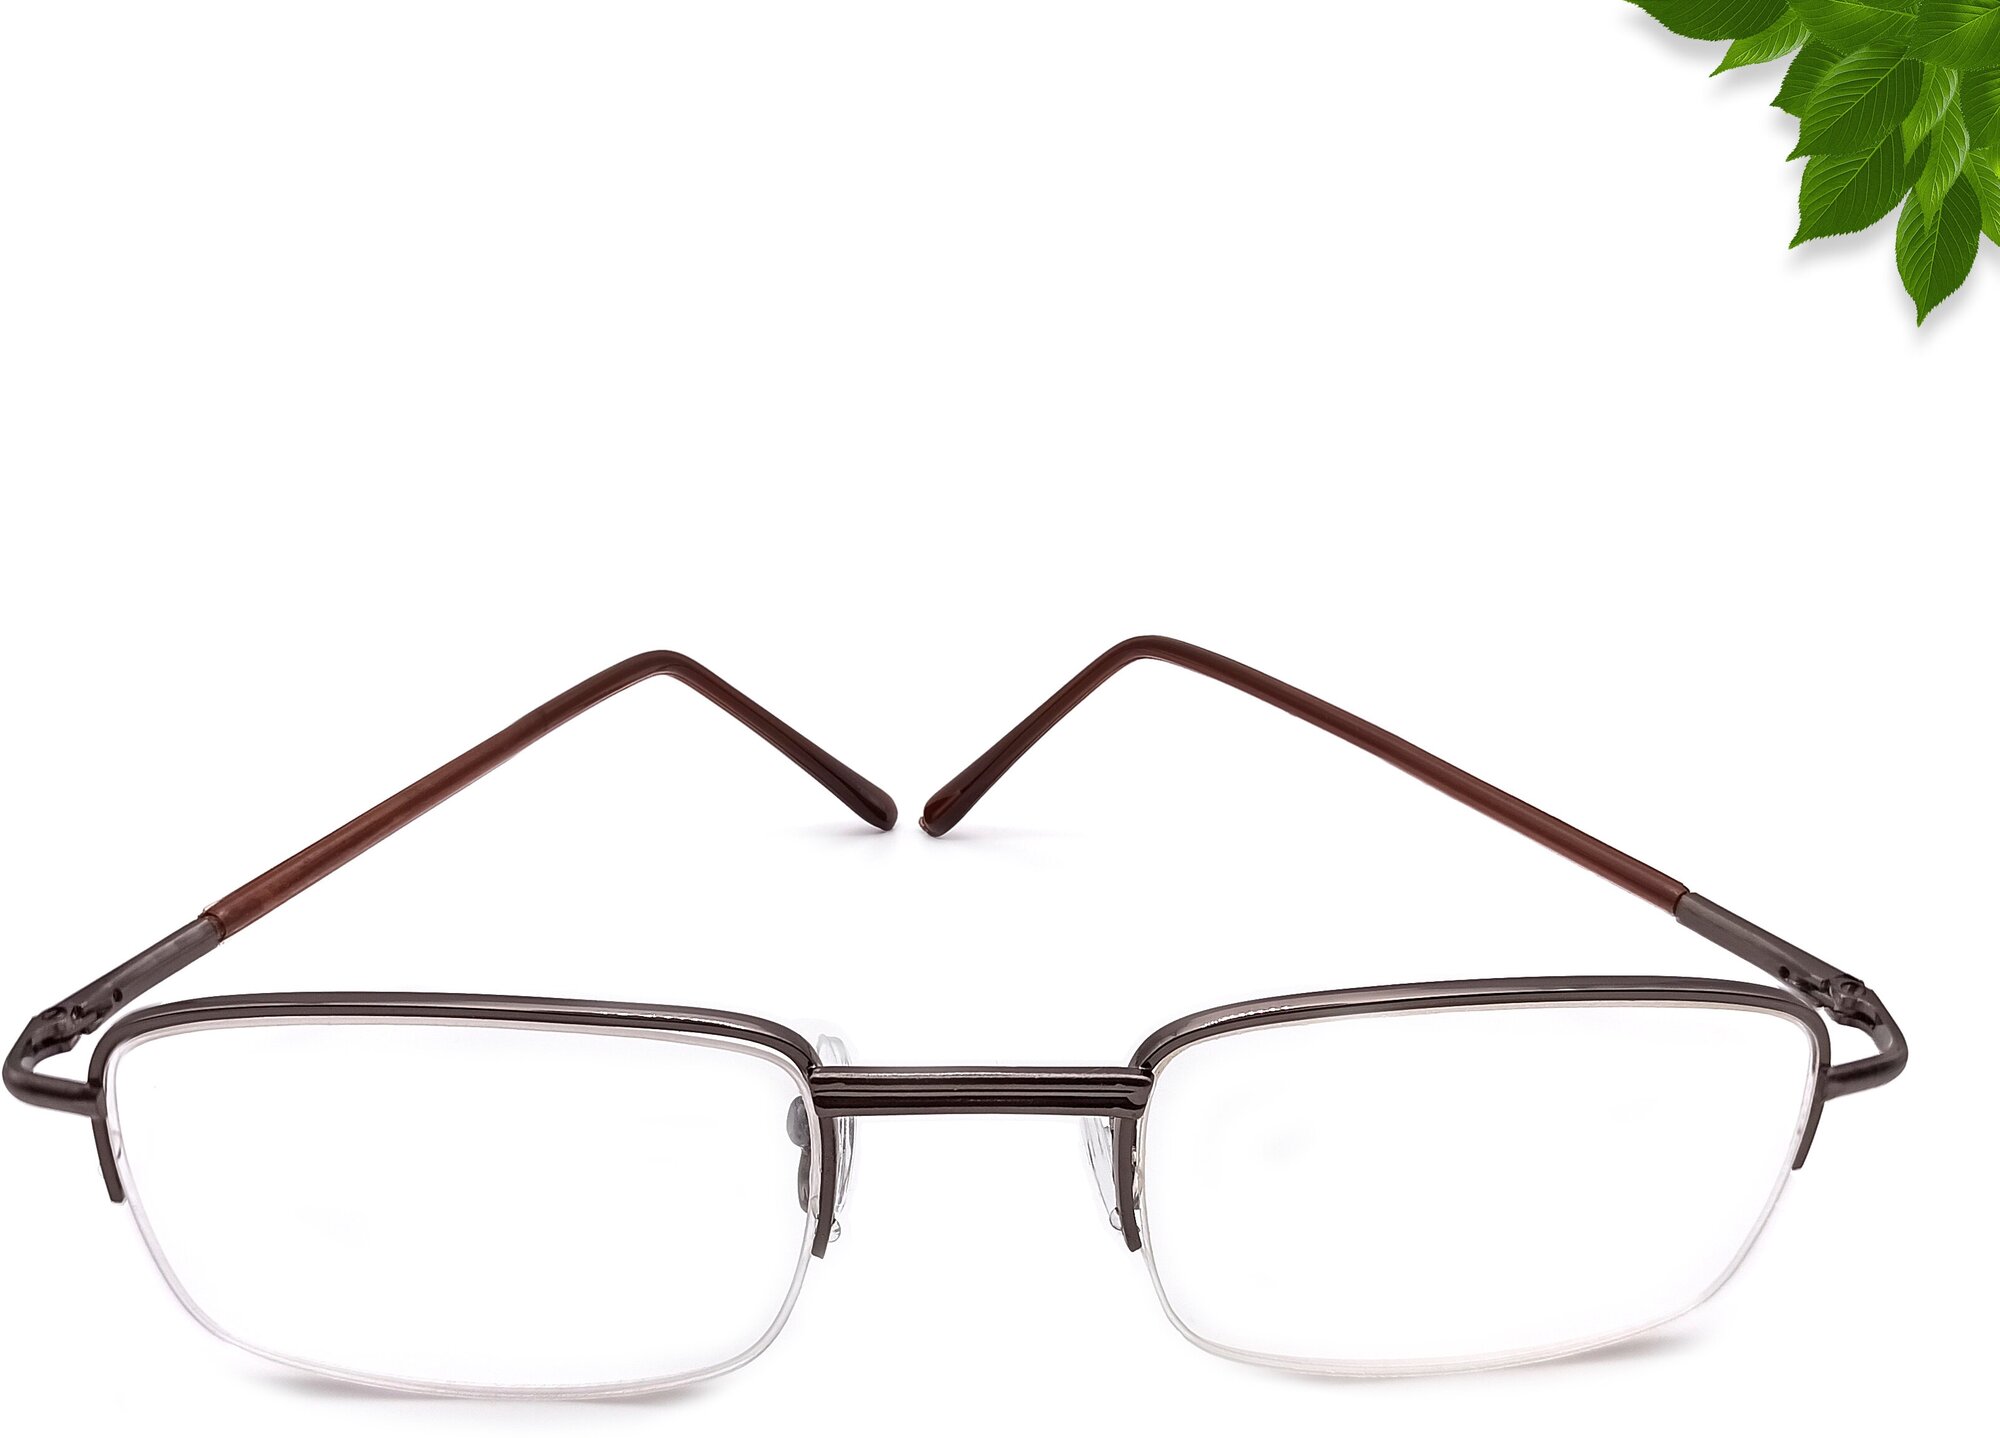 Готовые очки для зрения с диоптриями +2.00 для коррекции дальнозоркости в металлической полуободковой оправе